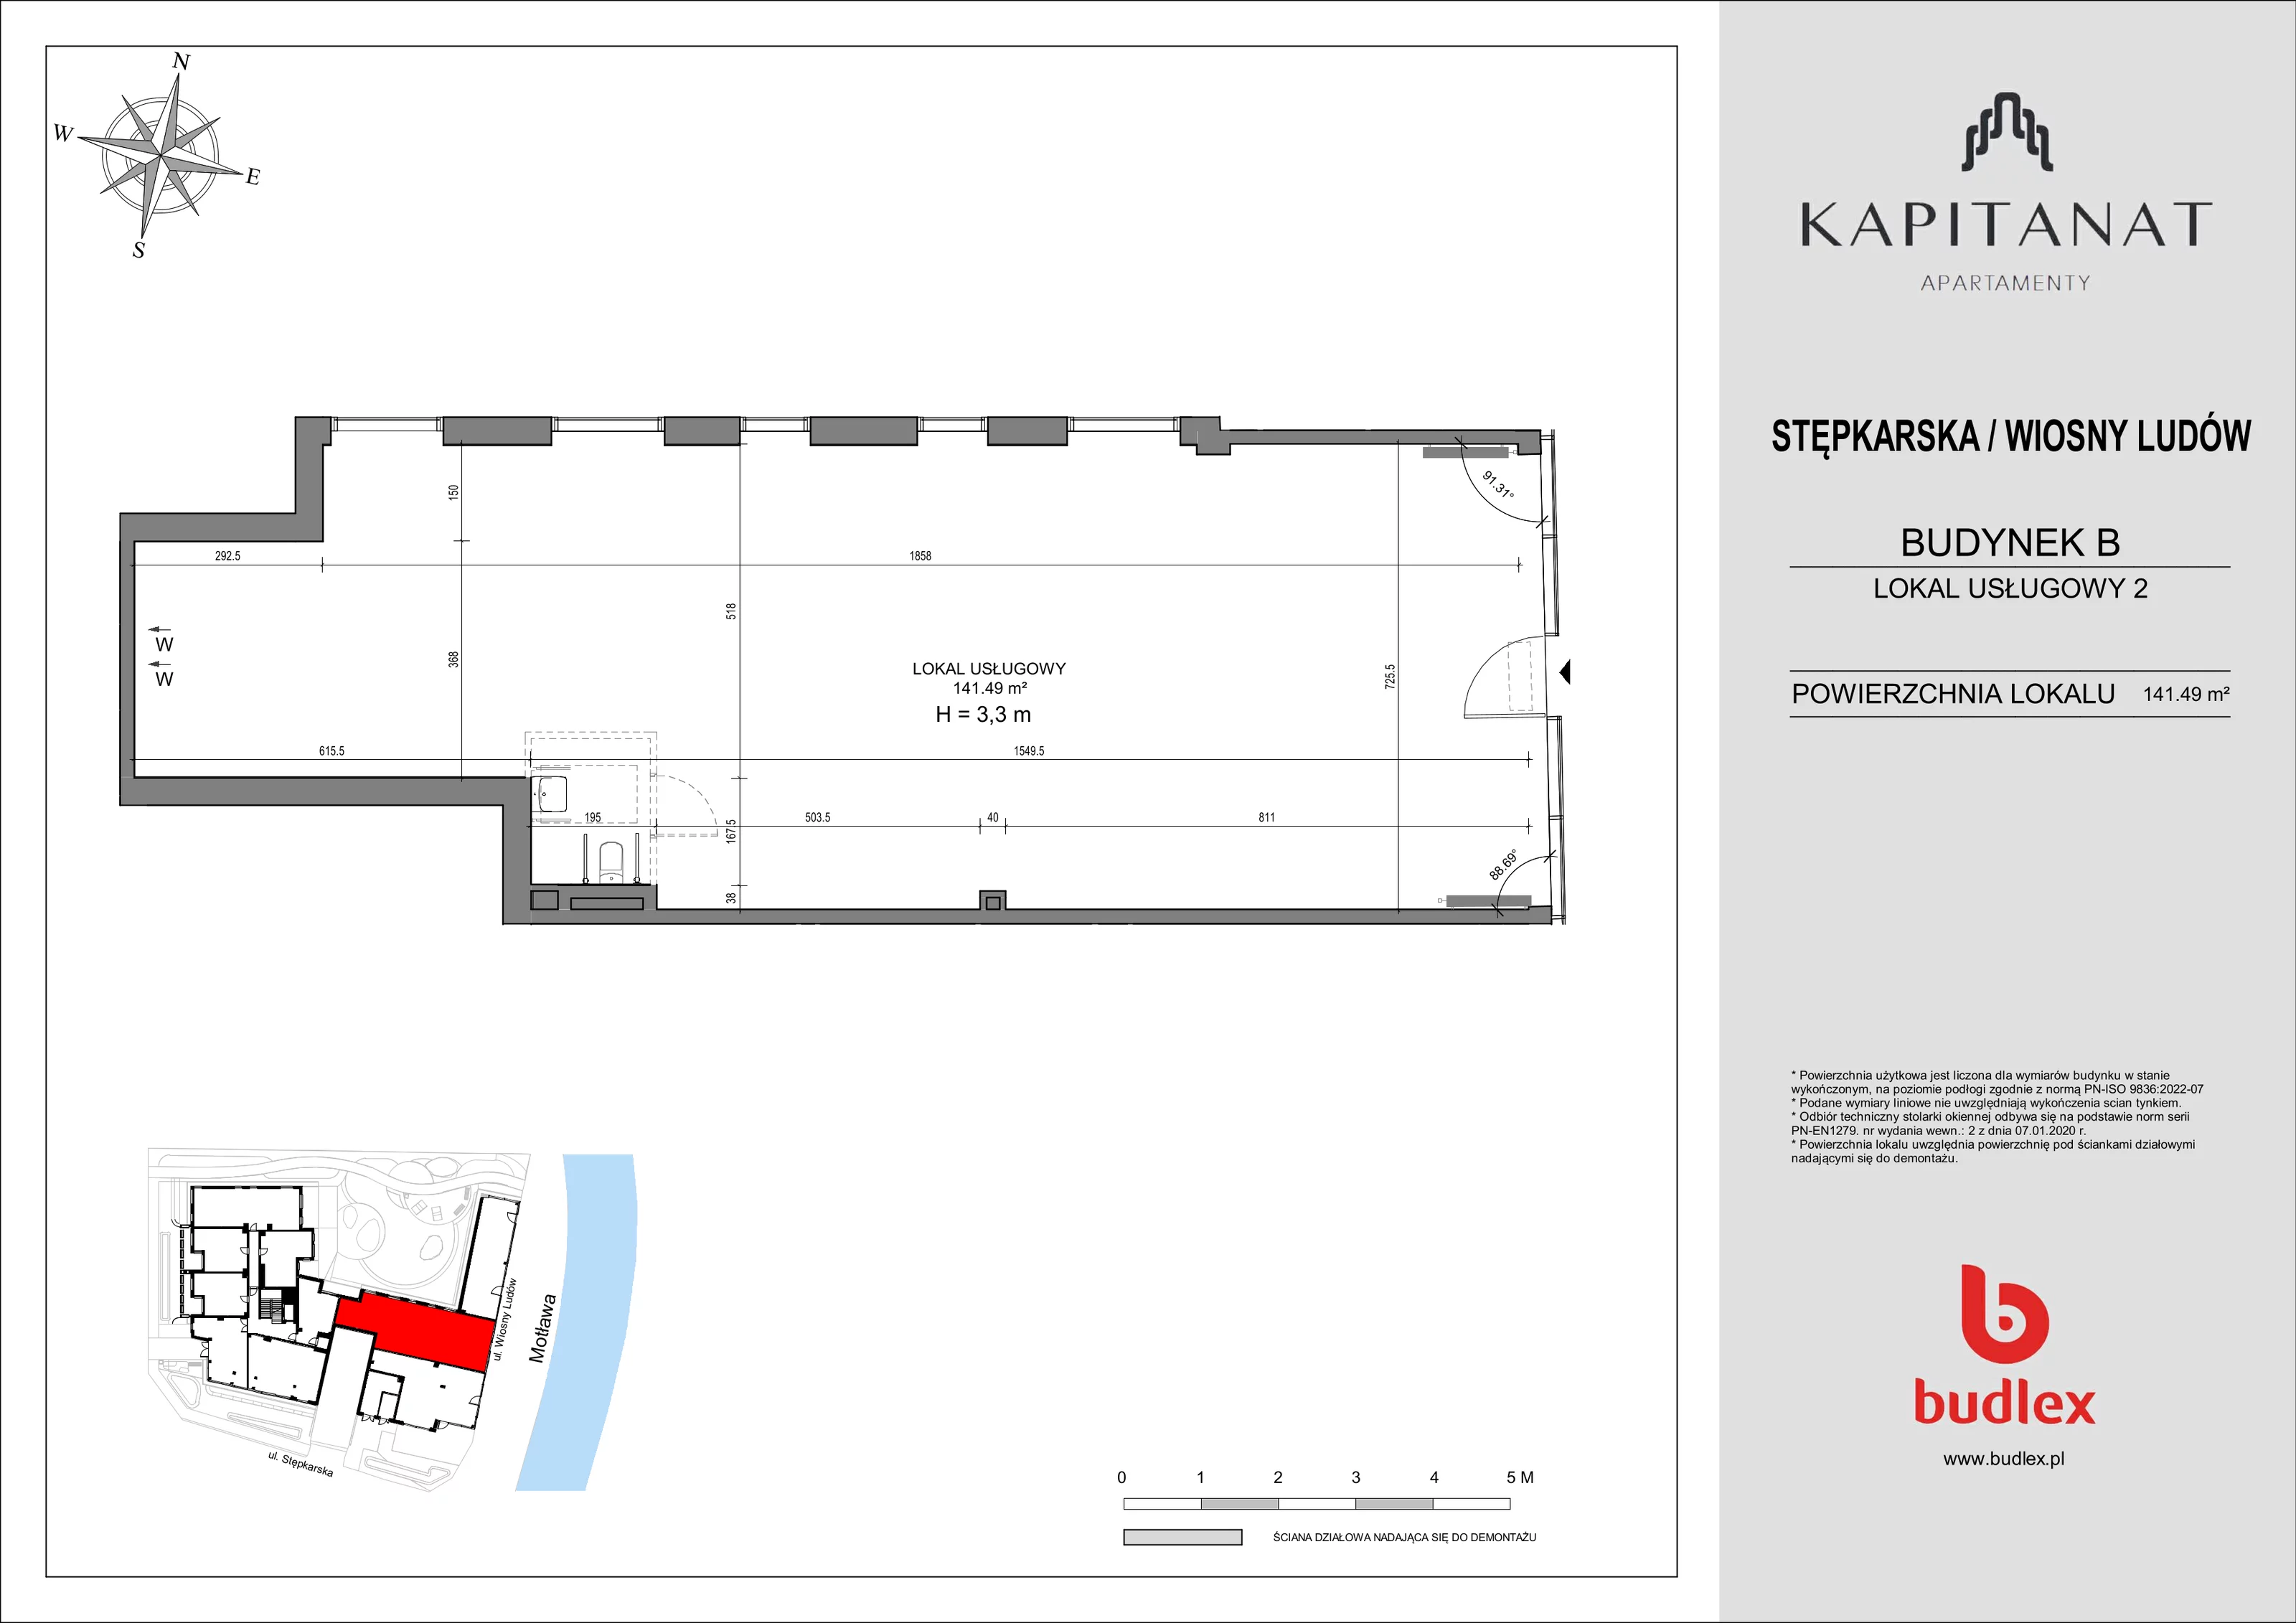 Lokal użytkowy 141,49 m², oferta nr 2, Kapitanat - lokale użytkowe, Gdańsk, Śródmieście, ul. Stępkarska / Wiosny Ludów